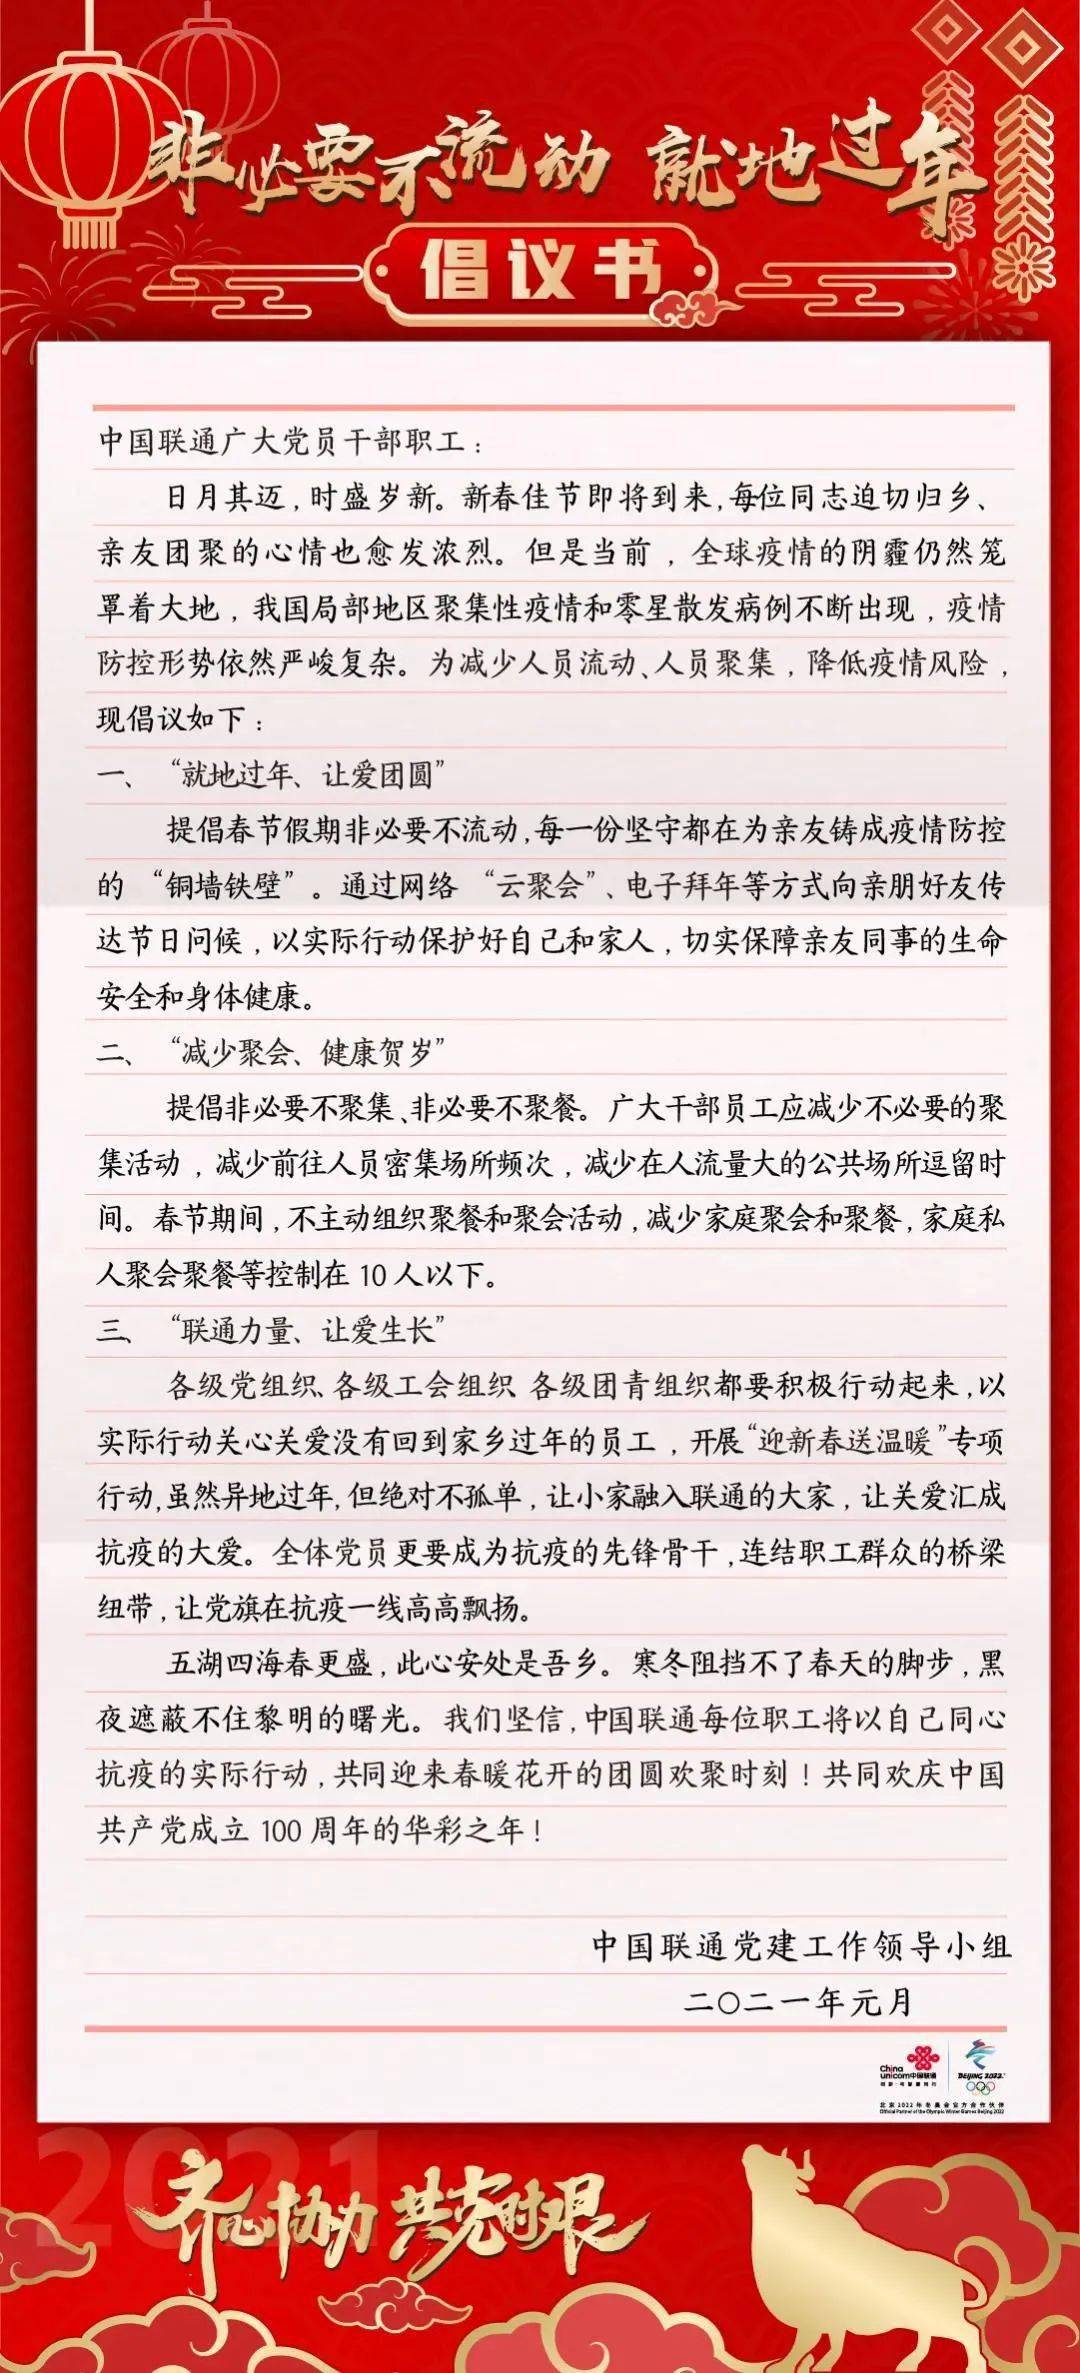 中国联通向全集团员工发出倡议书 就地过年 让爱团圆 